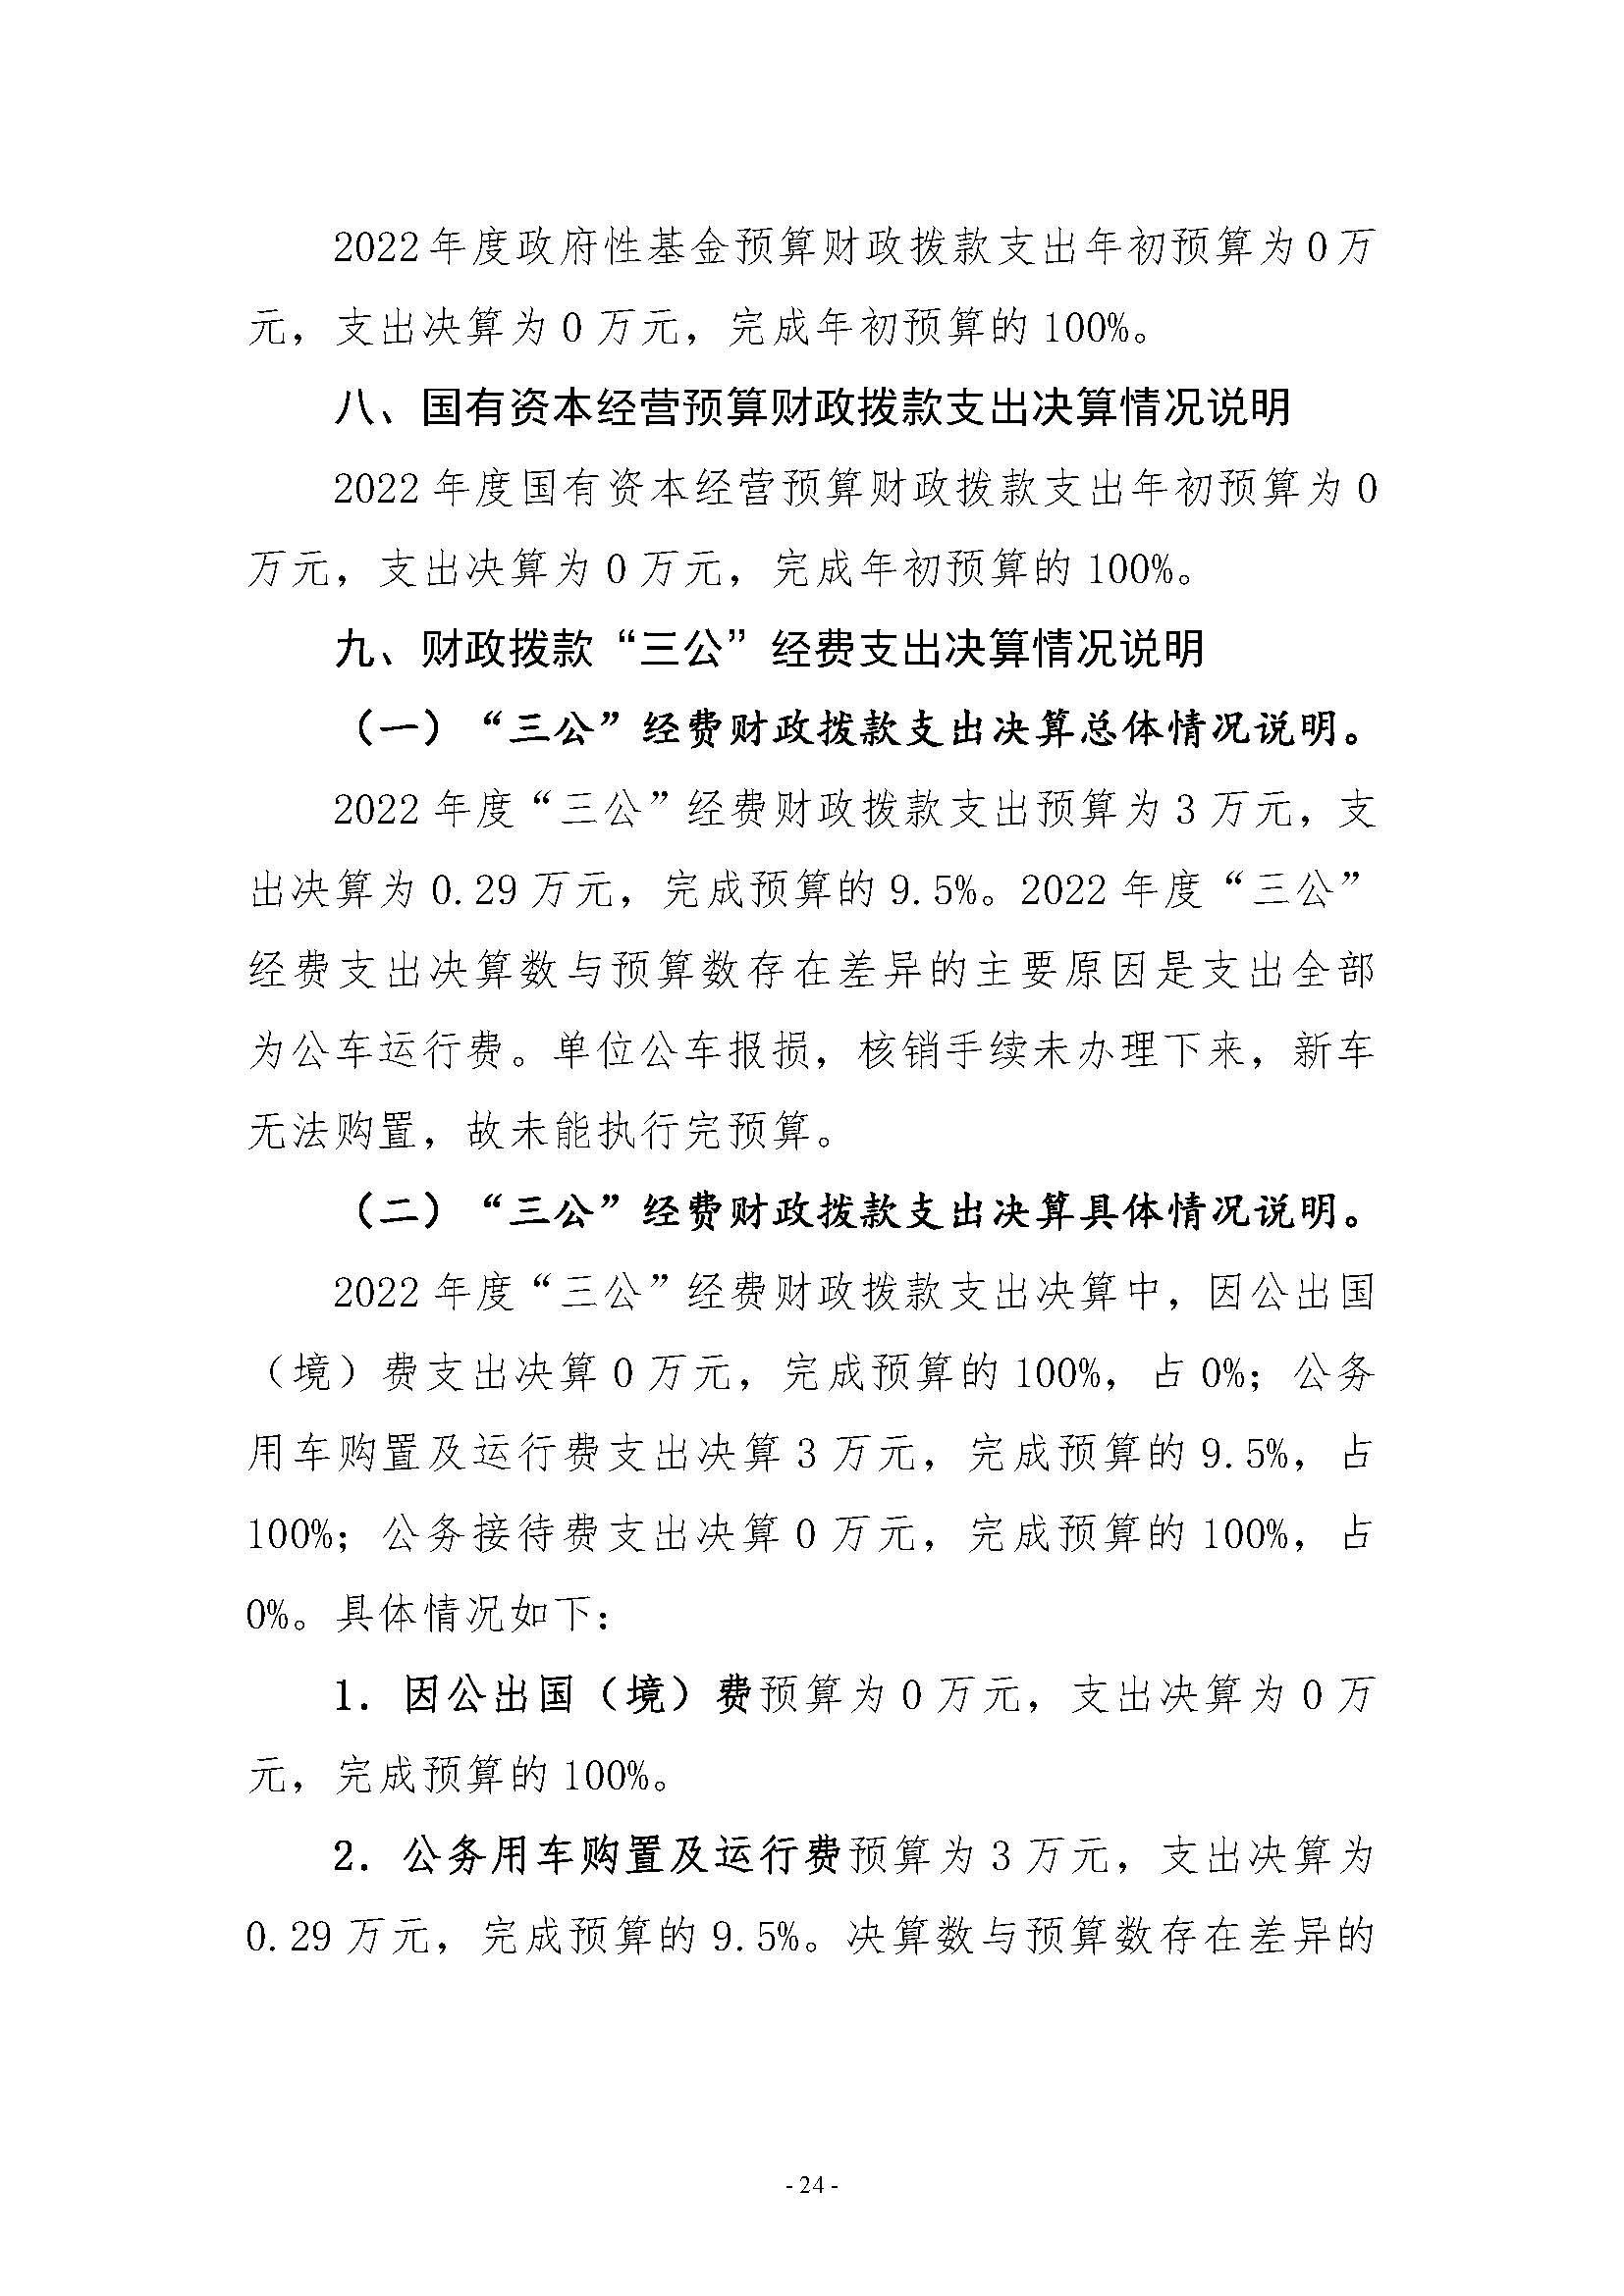 河南省水利科学研究院2022年年度省直部门决算公开(2)_页面_24.jpg